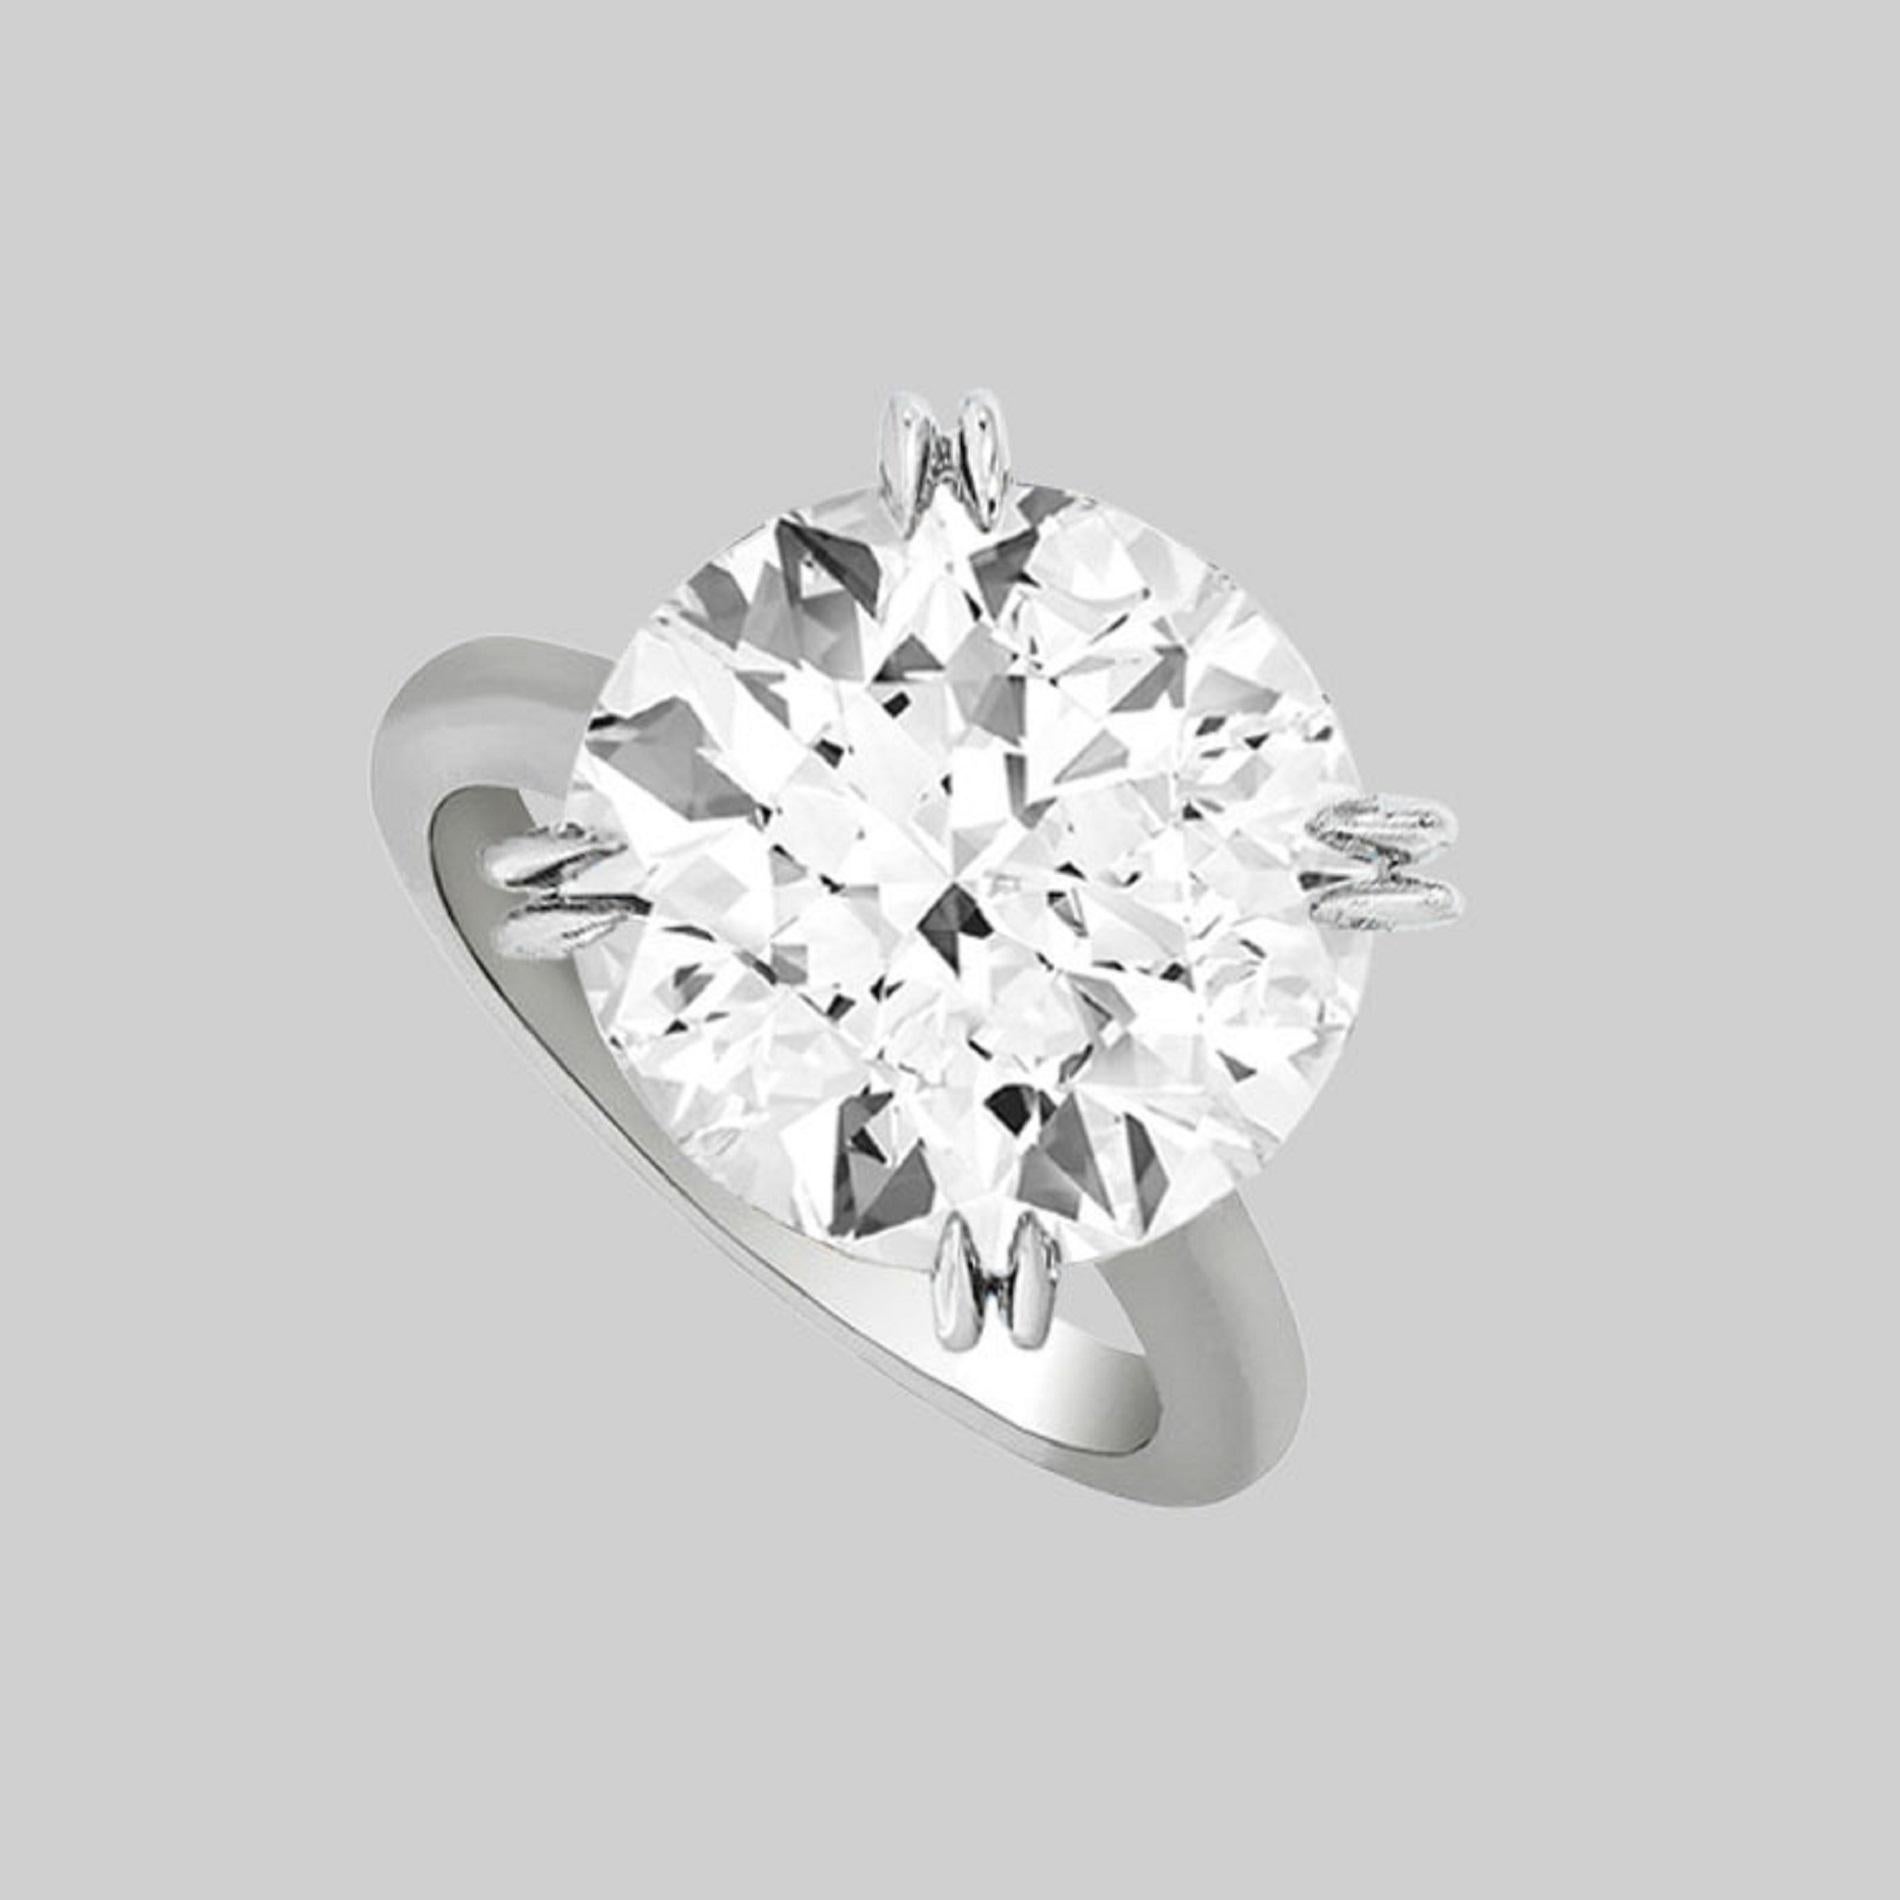 Ein außergewöhnlicher GIA-zertifizierter Verlobungsring mit rundem Diamantschliff. Der Hauptstein hat ein Gewicht von 10 Karat, ist von der Farbe her F und von der Reinheit her VS1.  Ausgezeichneter Glanz und Leistung.

- Ausgezeichneter Schnitt
-